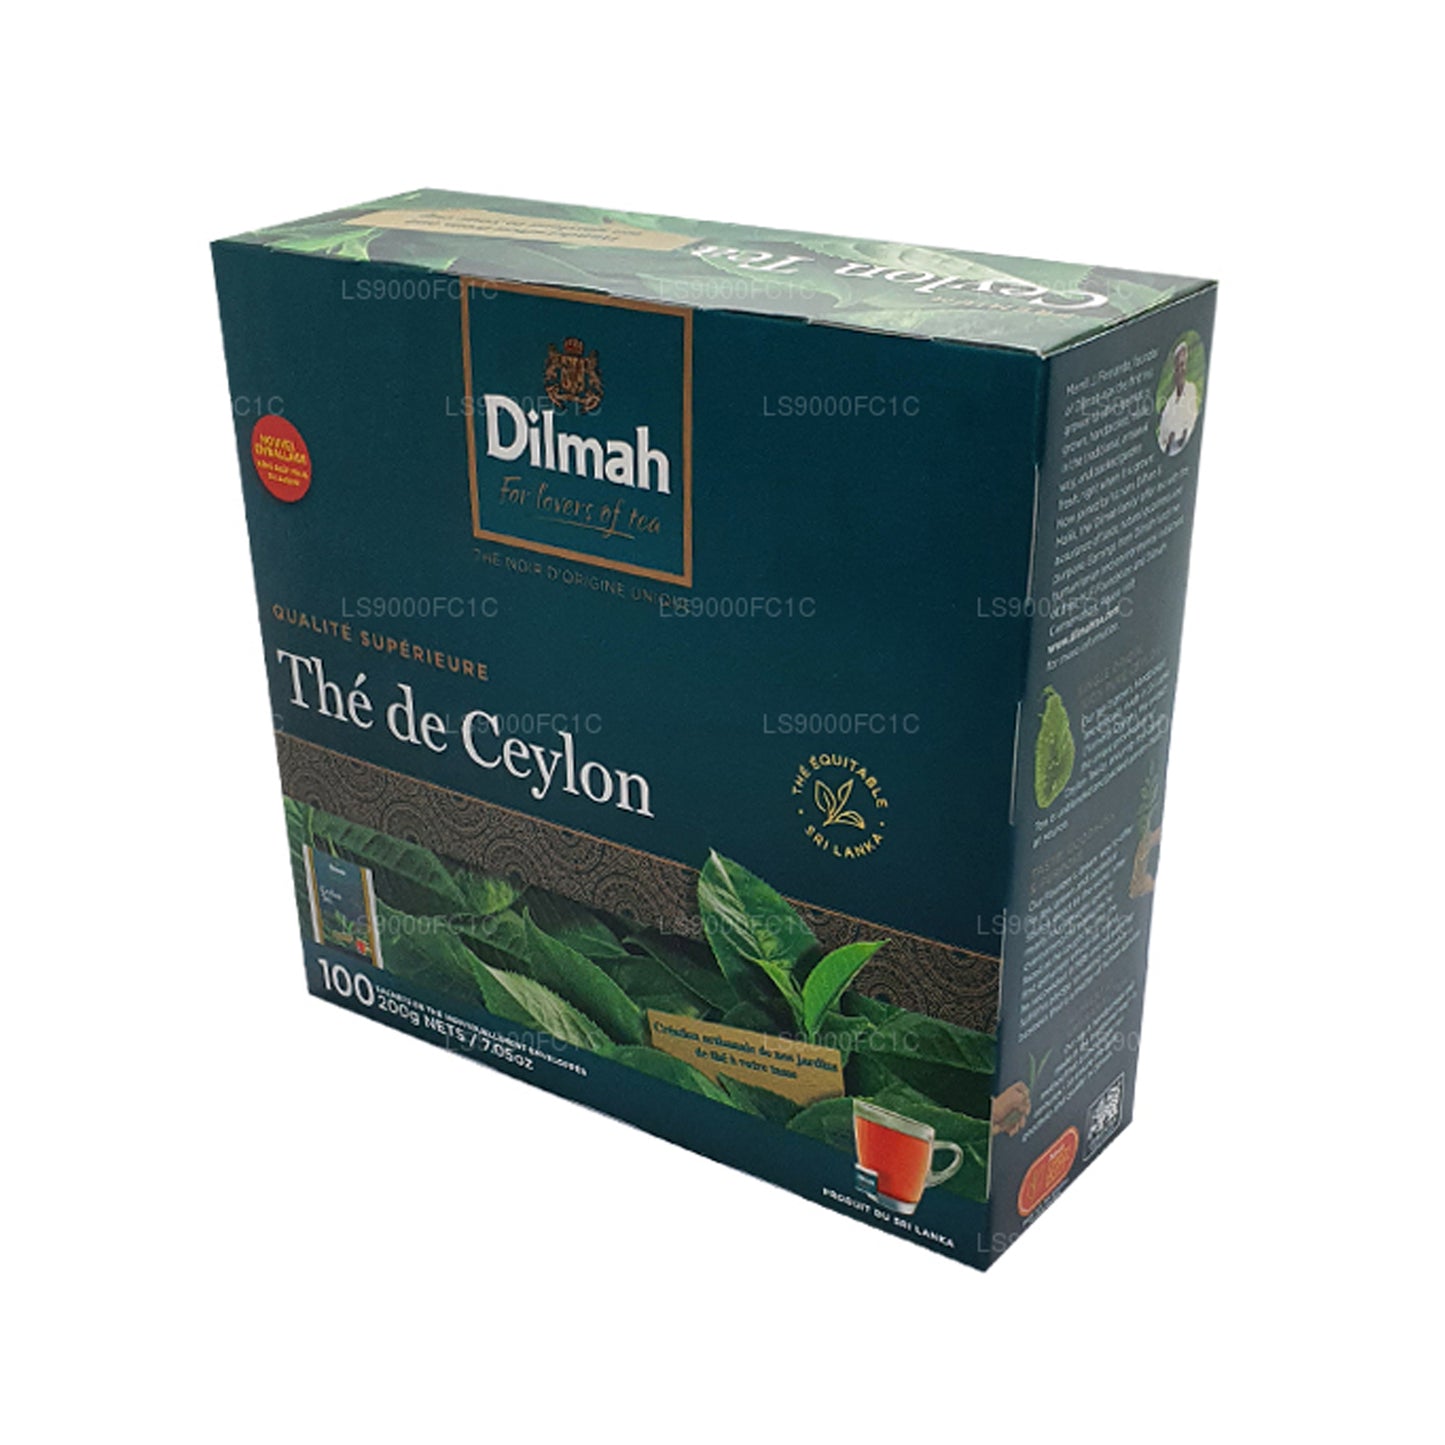 Dilmah Premium Ceylon-thee, individueel verpakt 100 theezakjes (200 g)